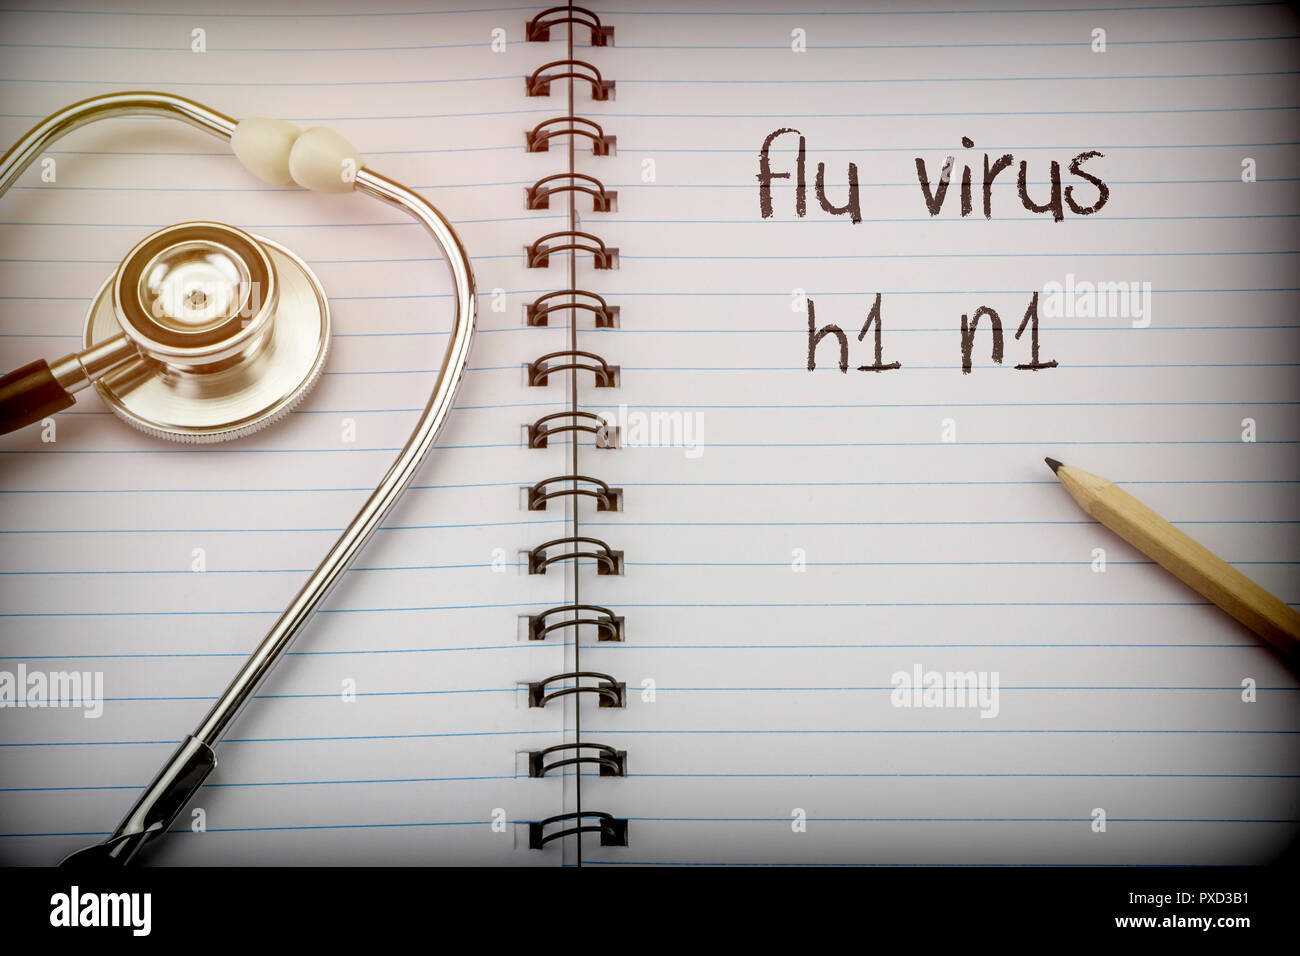 Uno stetoscopio sul notebook e matita con virus influenzale H1 n1 parole come Foto Stock